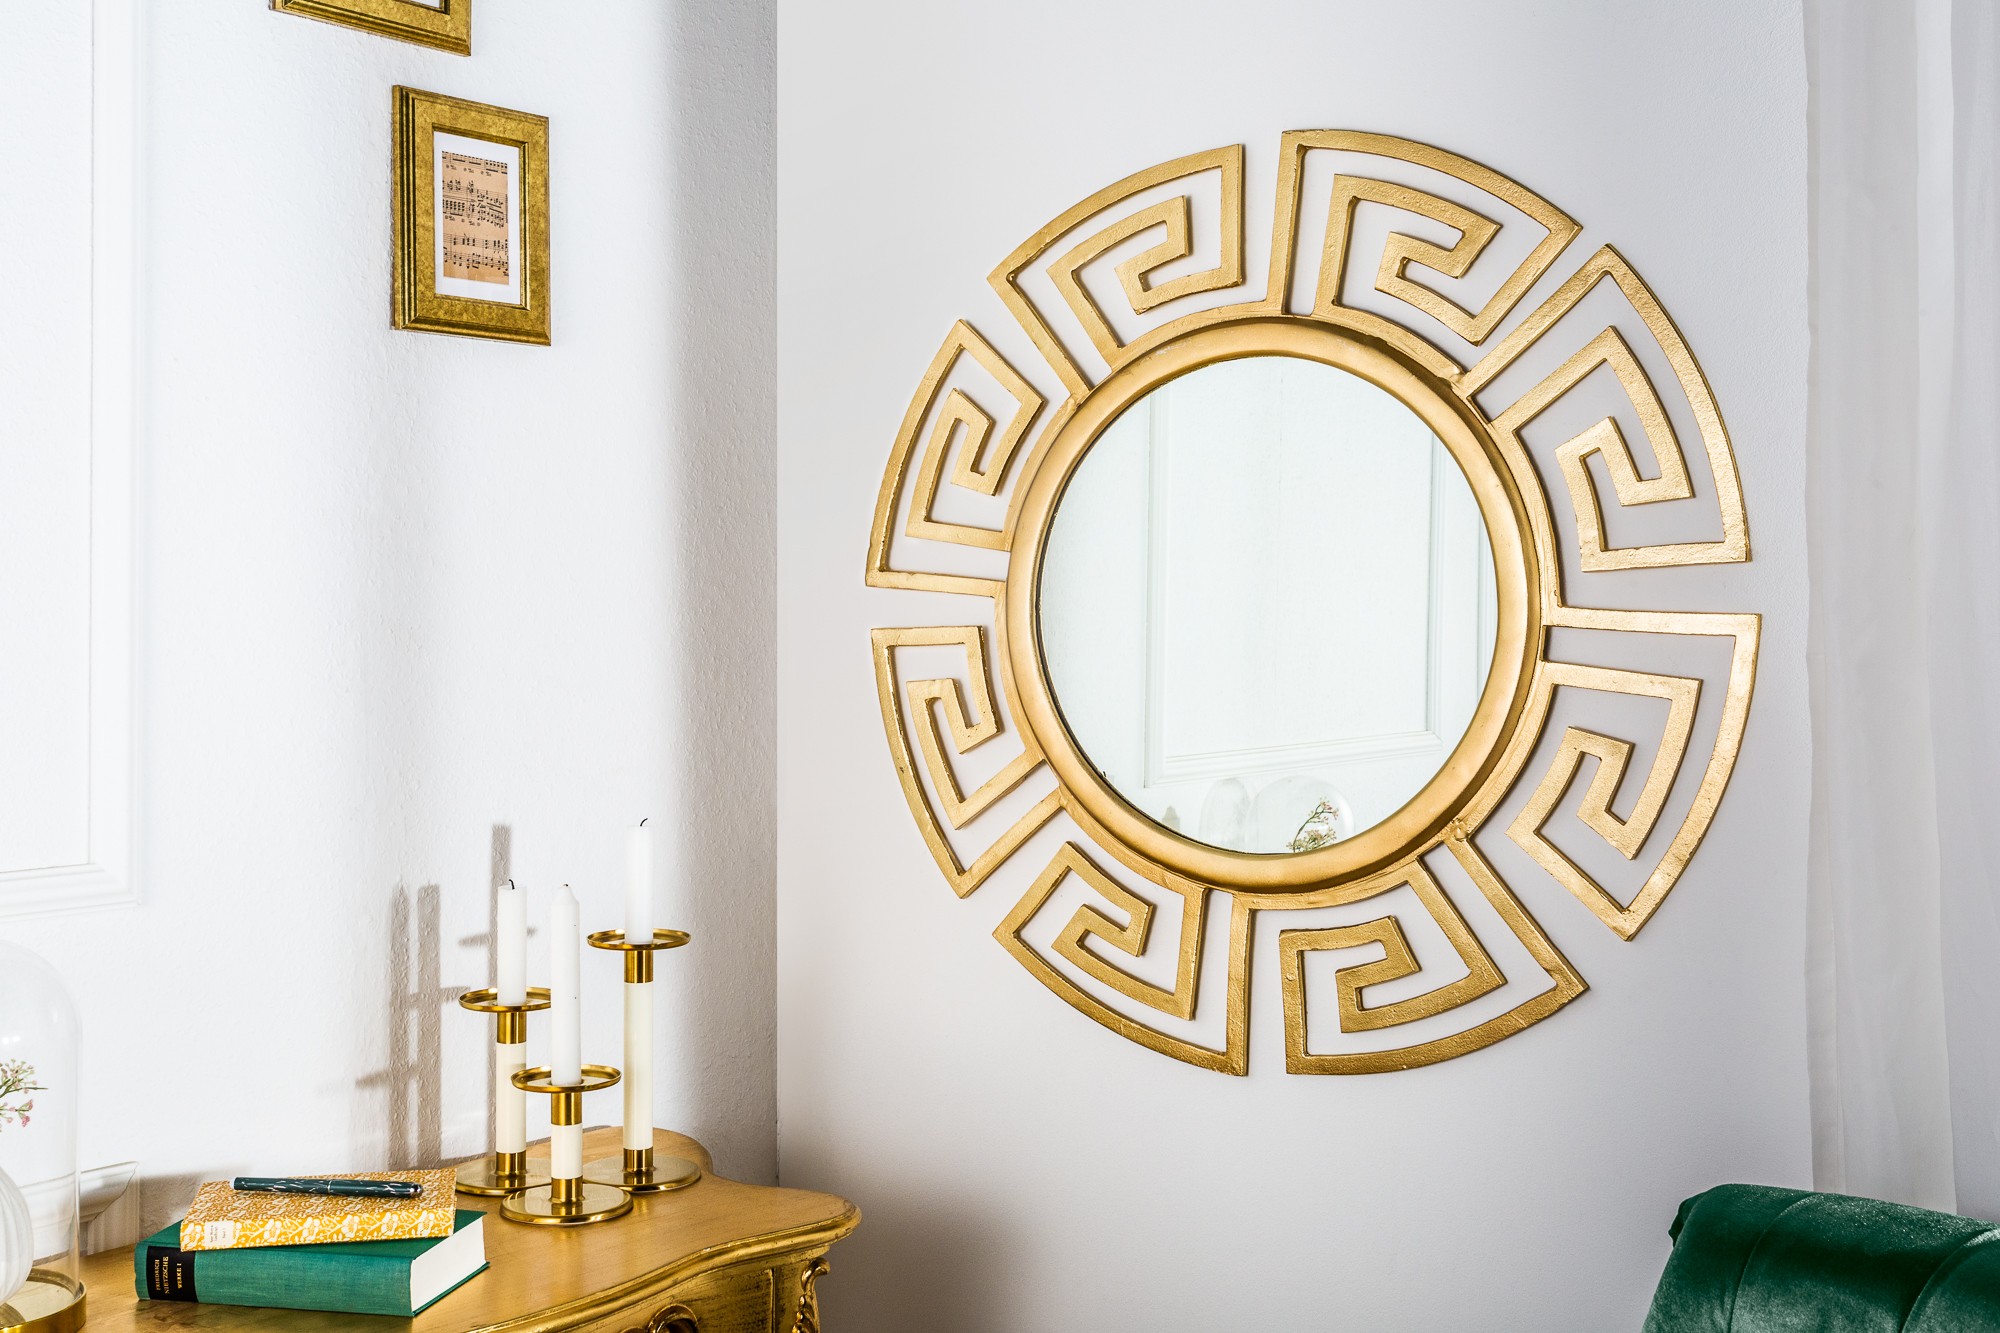 Estila Luxusné okrúhle zrkadlo Euphoria 85cm zlaté